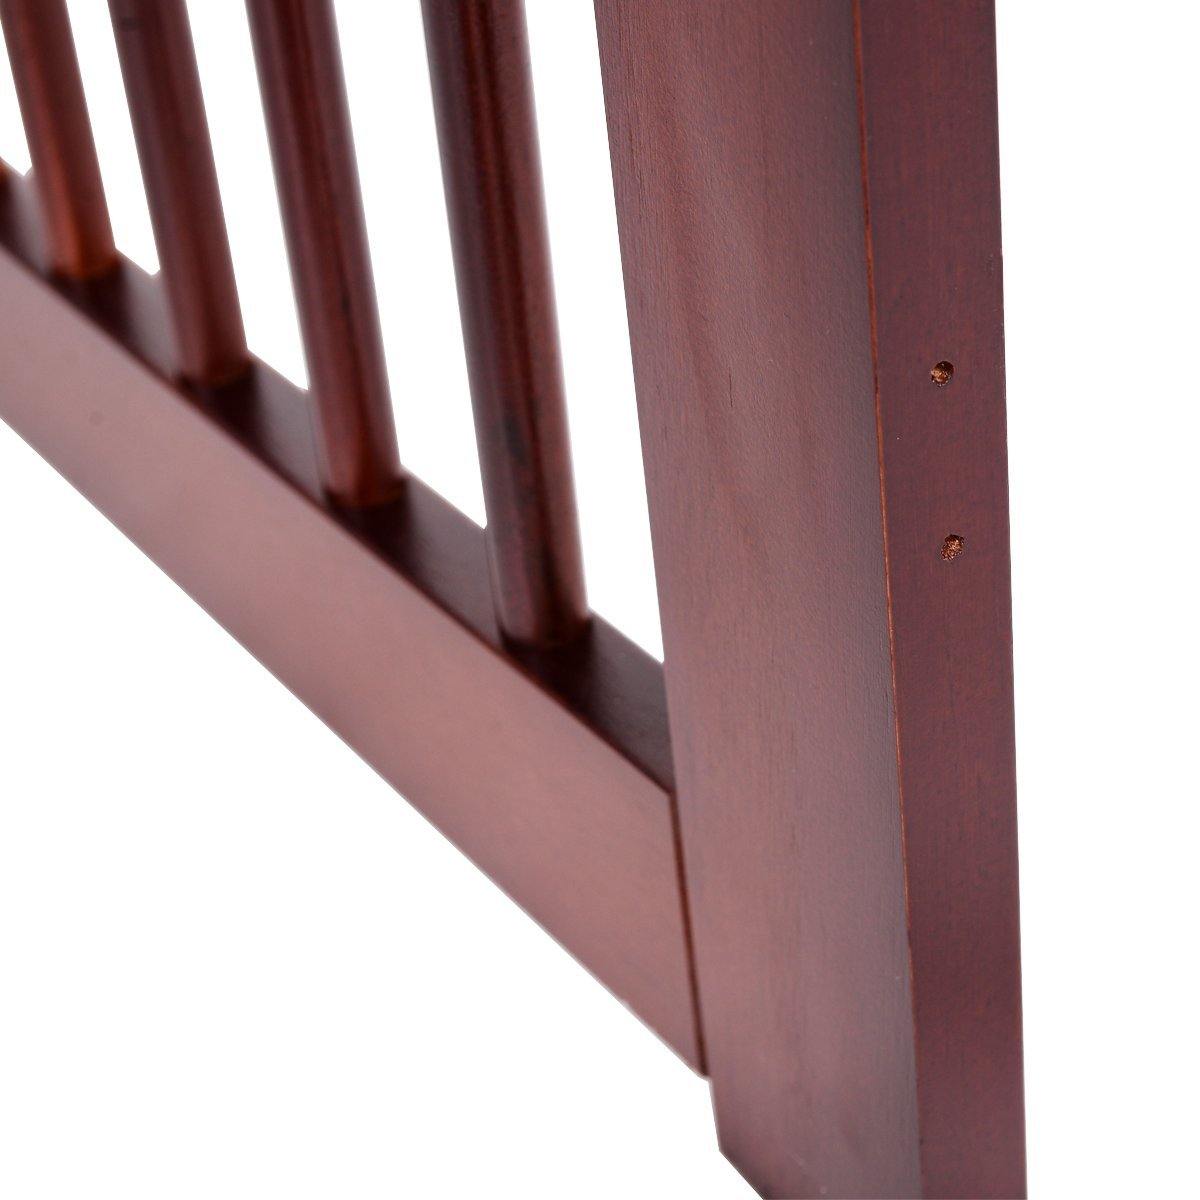 30" Configurable Folding 4 Panel Wood Fence - Giantexus